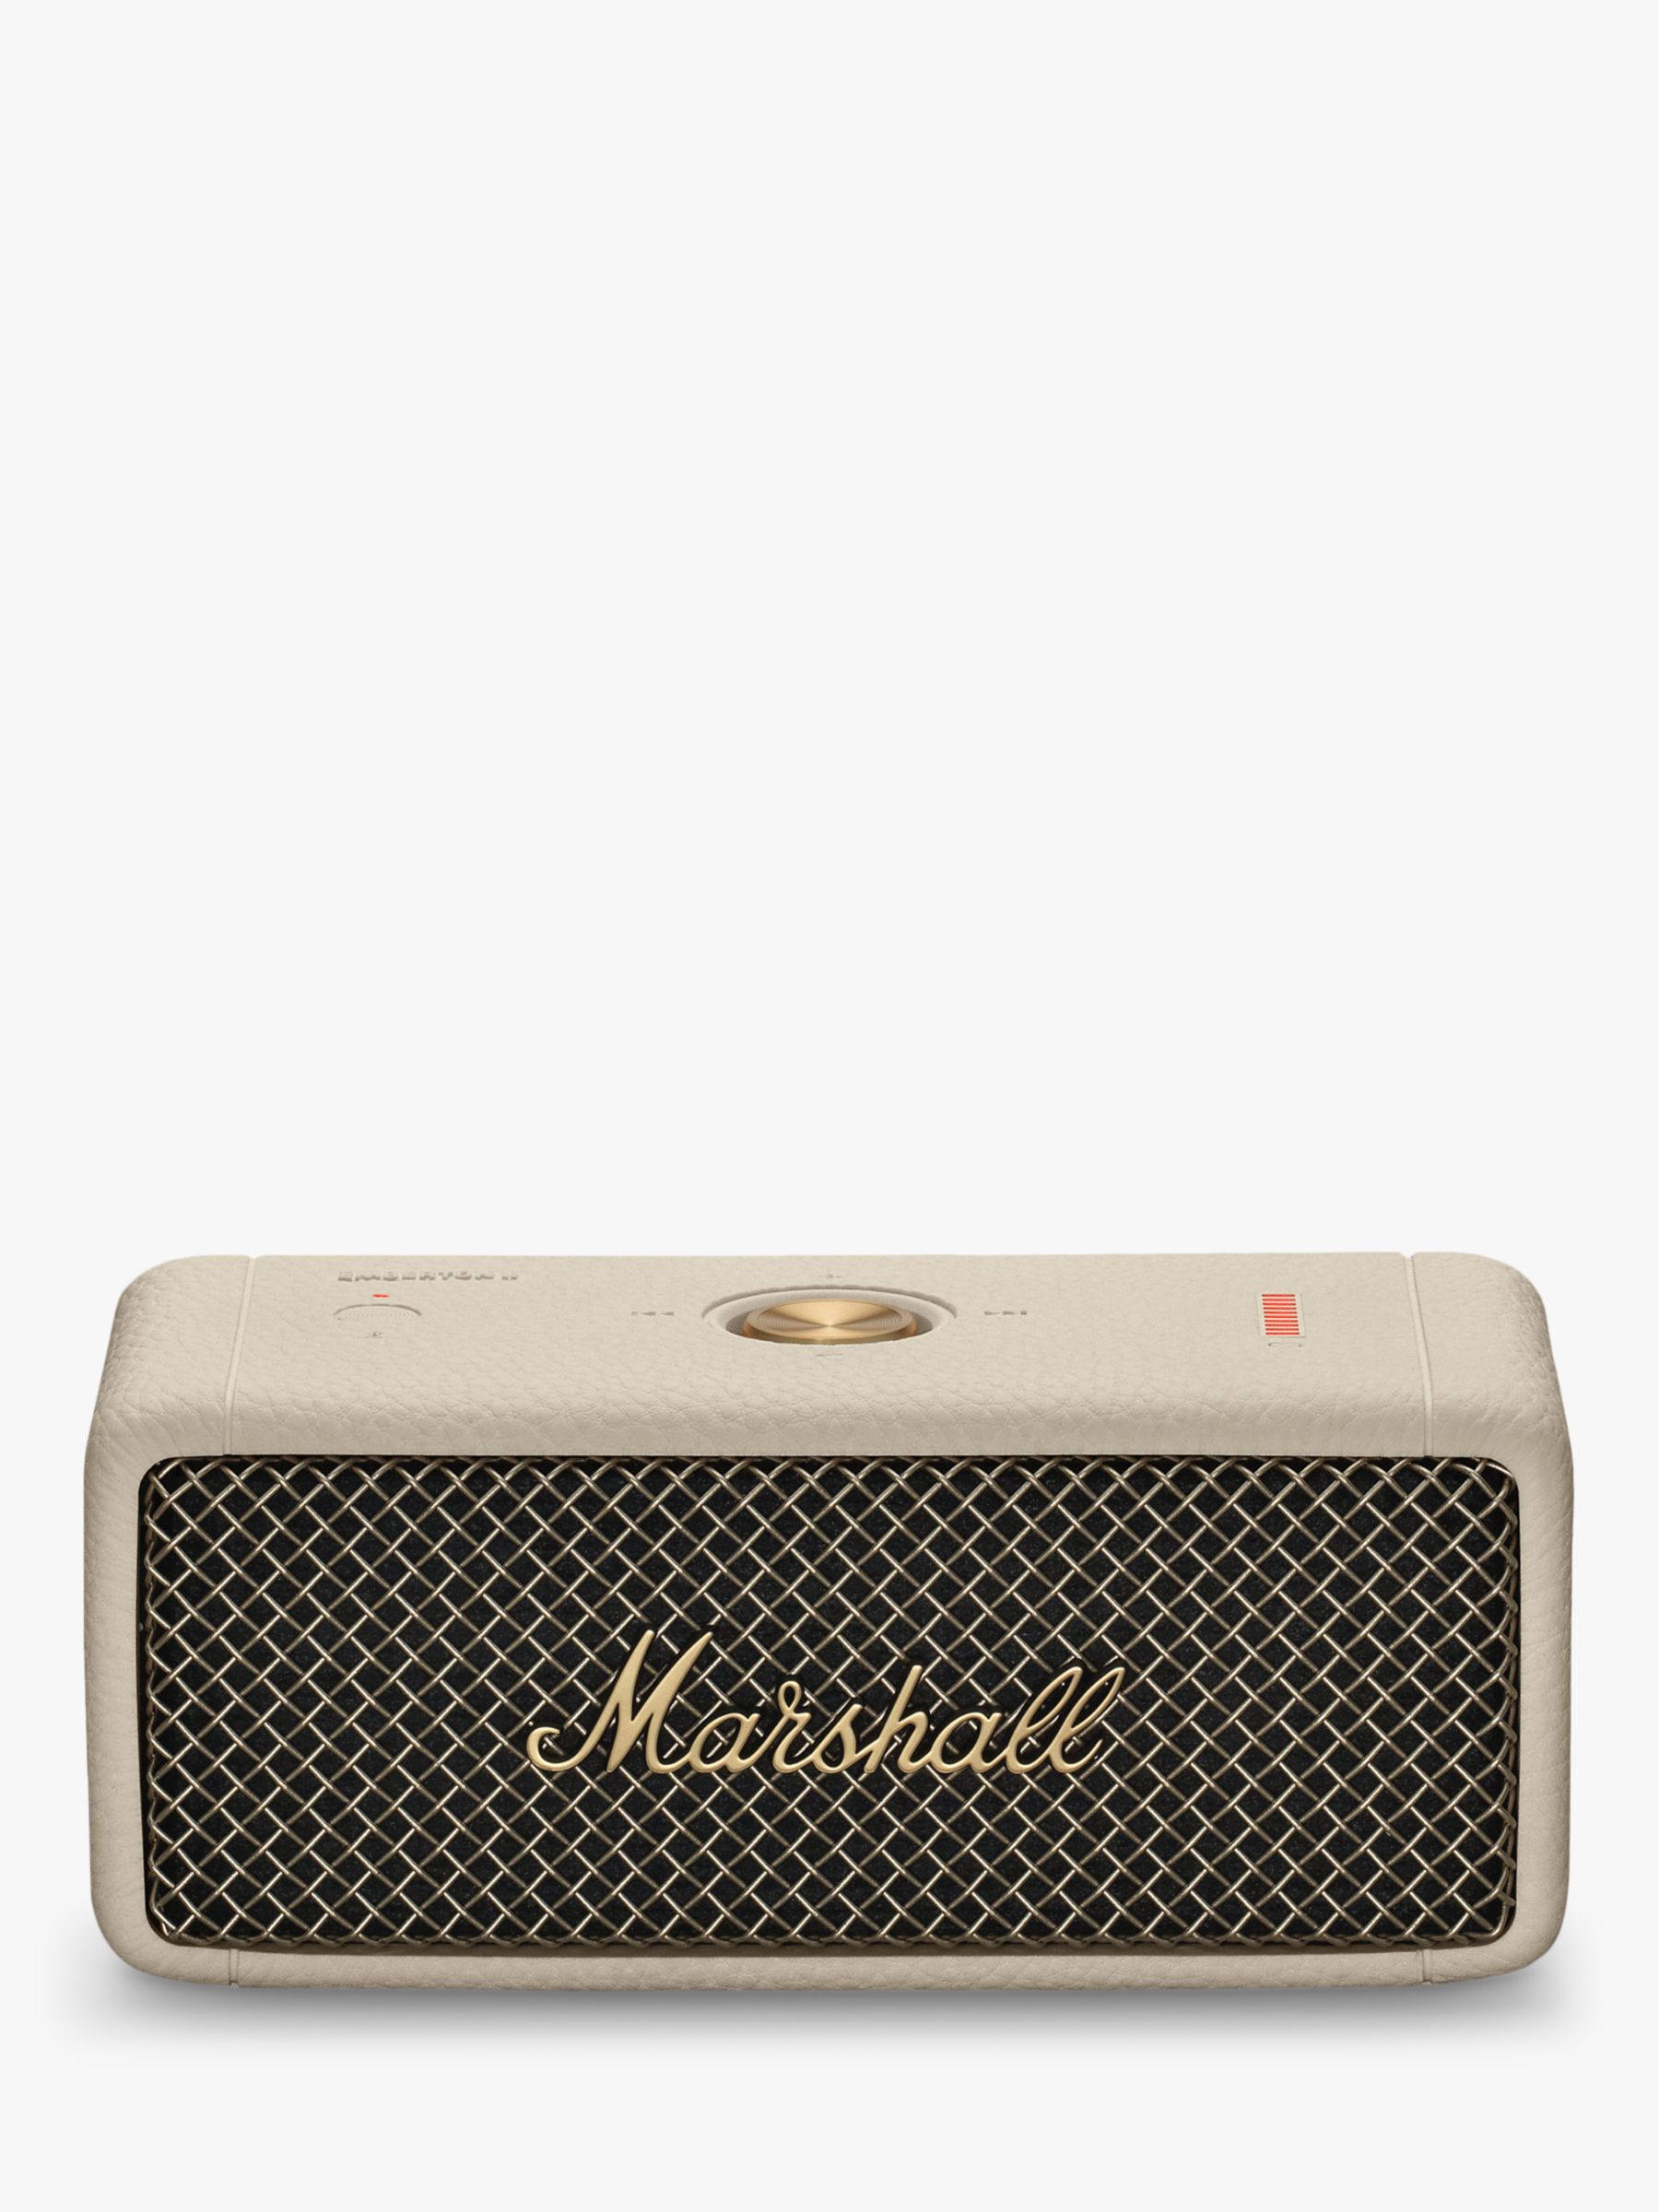 Marshall Emberton Portable Bluetooth Speaker, Black